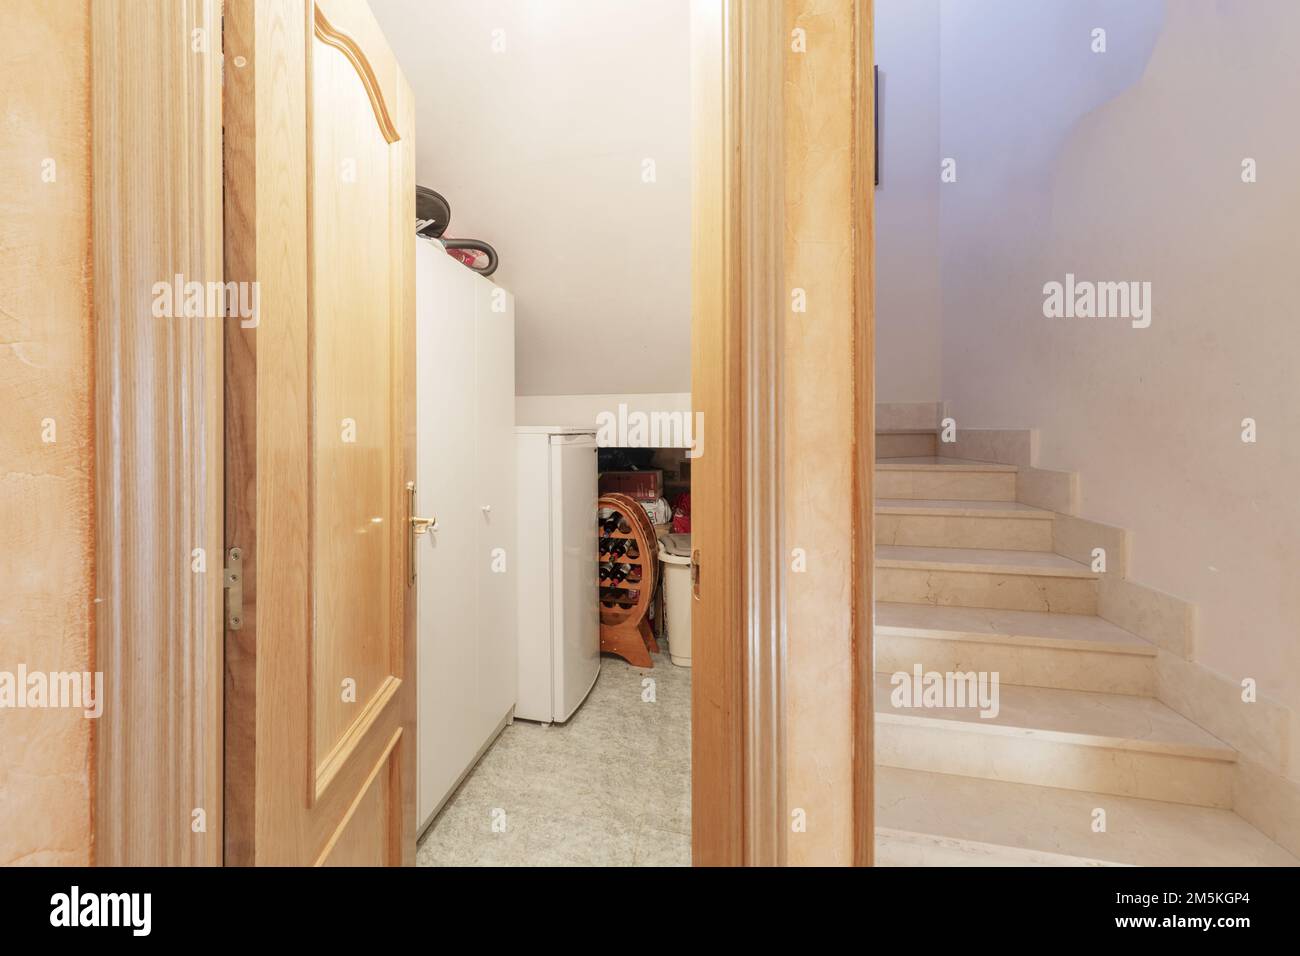 Escaliers d'une maison individuelle avec des marches en marbre couleur crème et un garde-manger avec réfrigérateur et casier à vin Banque D'Images